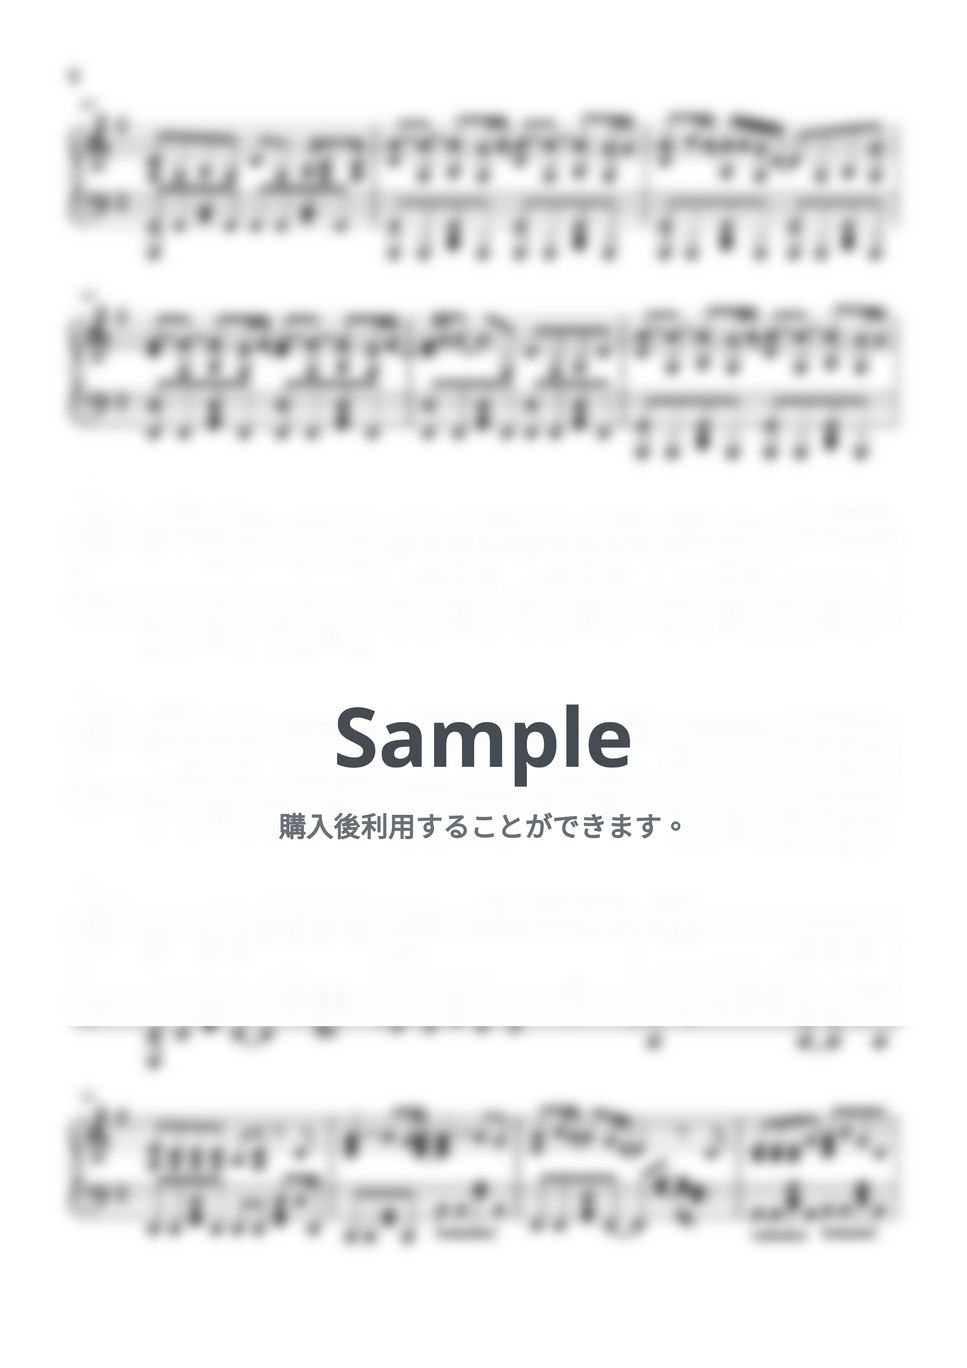 レミオロメン - 粉雪 (ピアノソロ) by MIKA